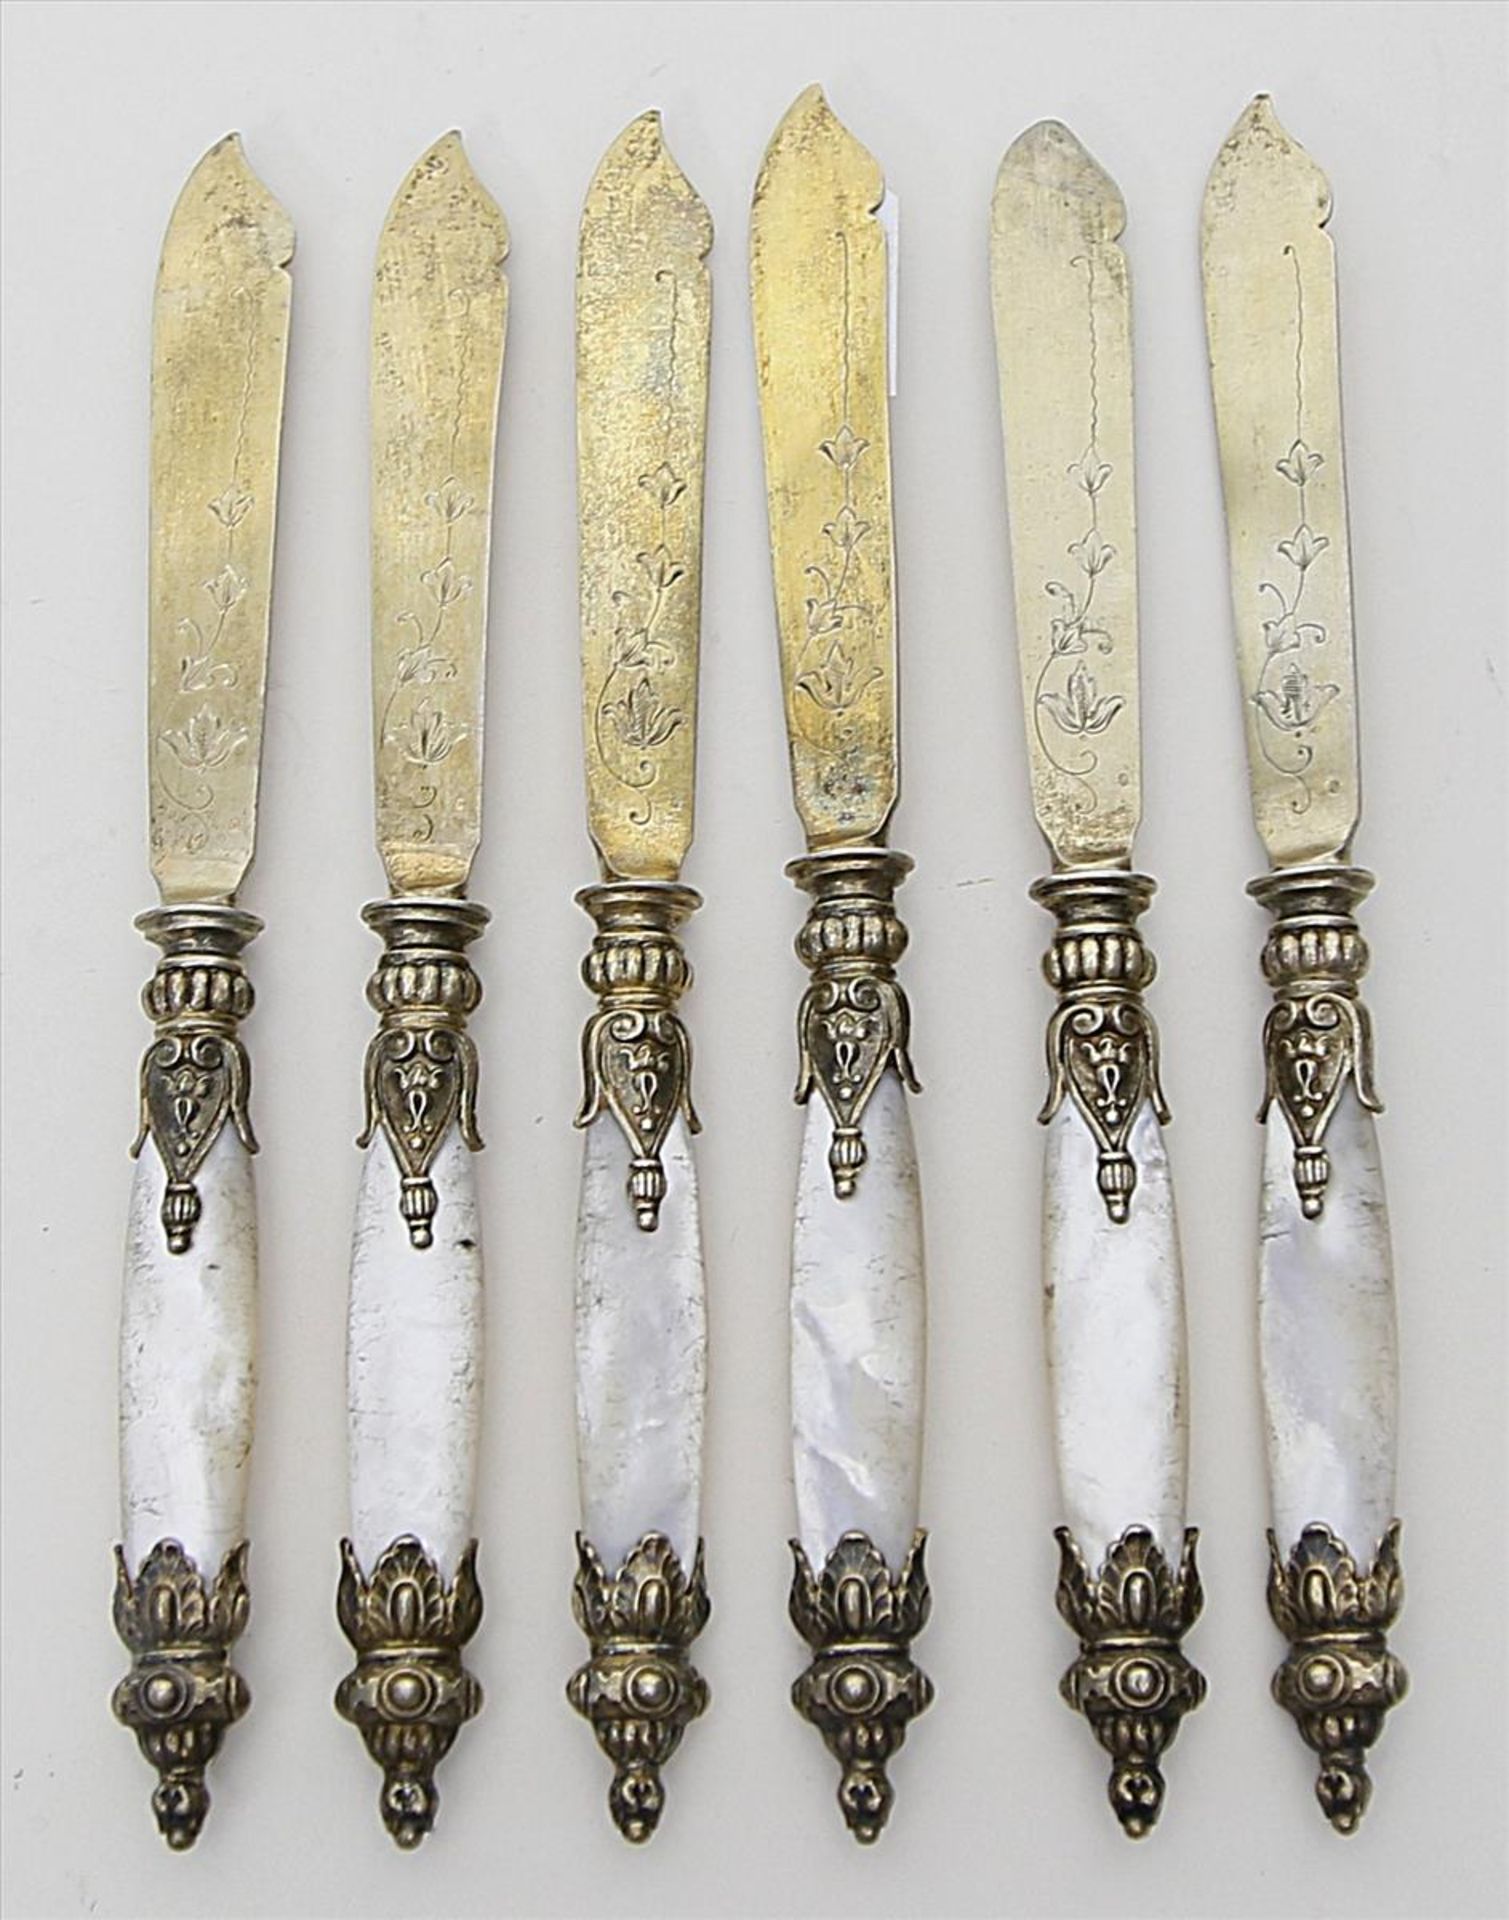 Sechs Historismus-Messer.800/000 Silber (vergoldet), brutto 241 g. Reliefierte Griffe mit